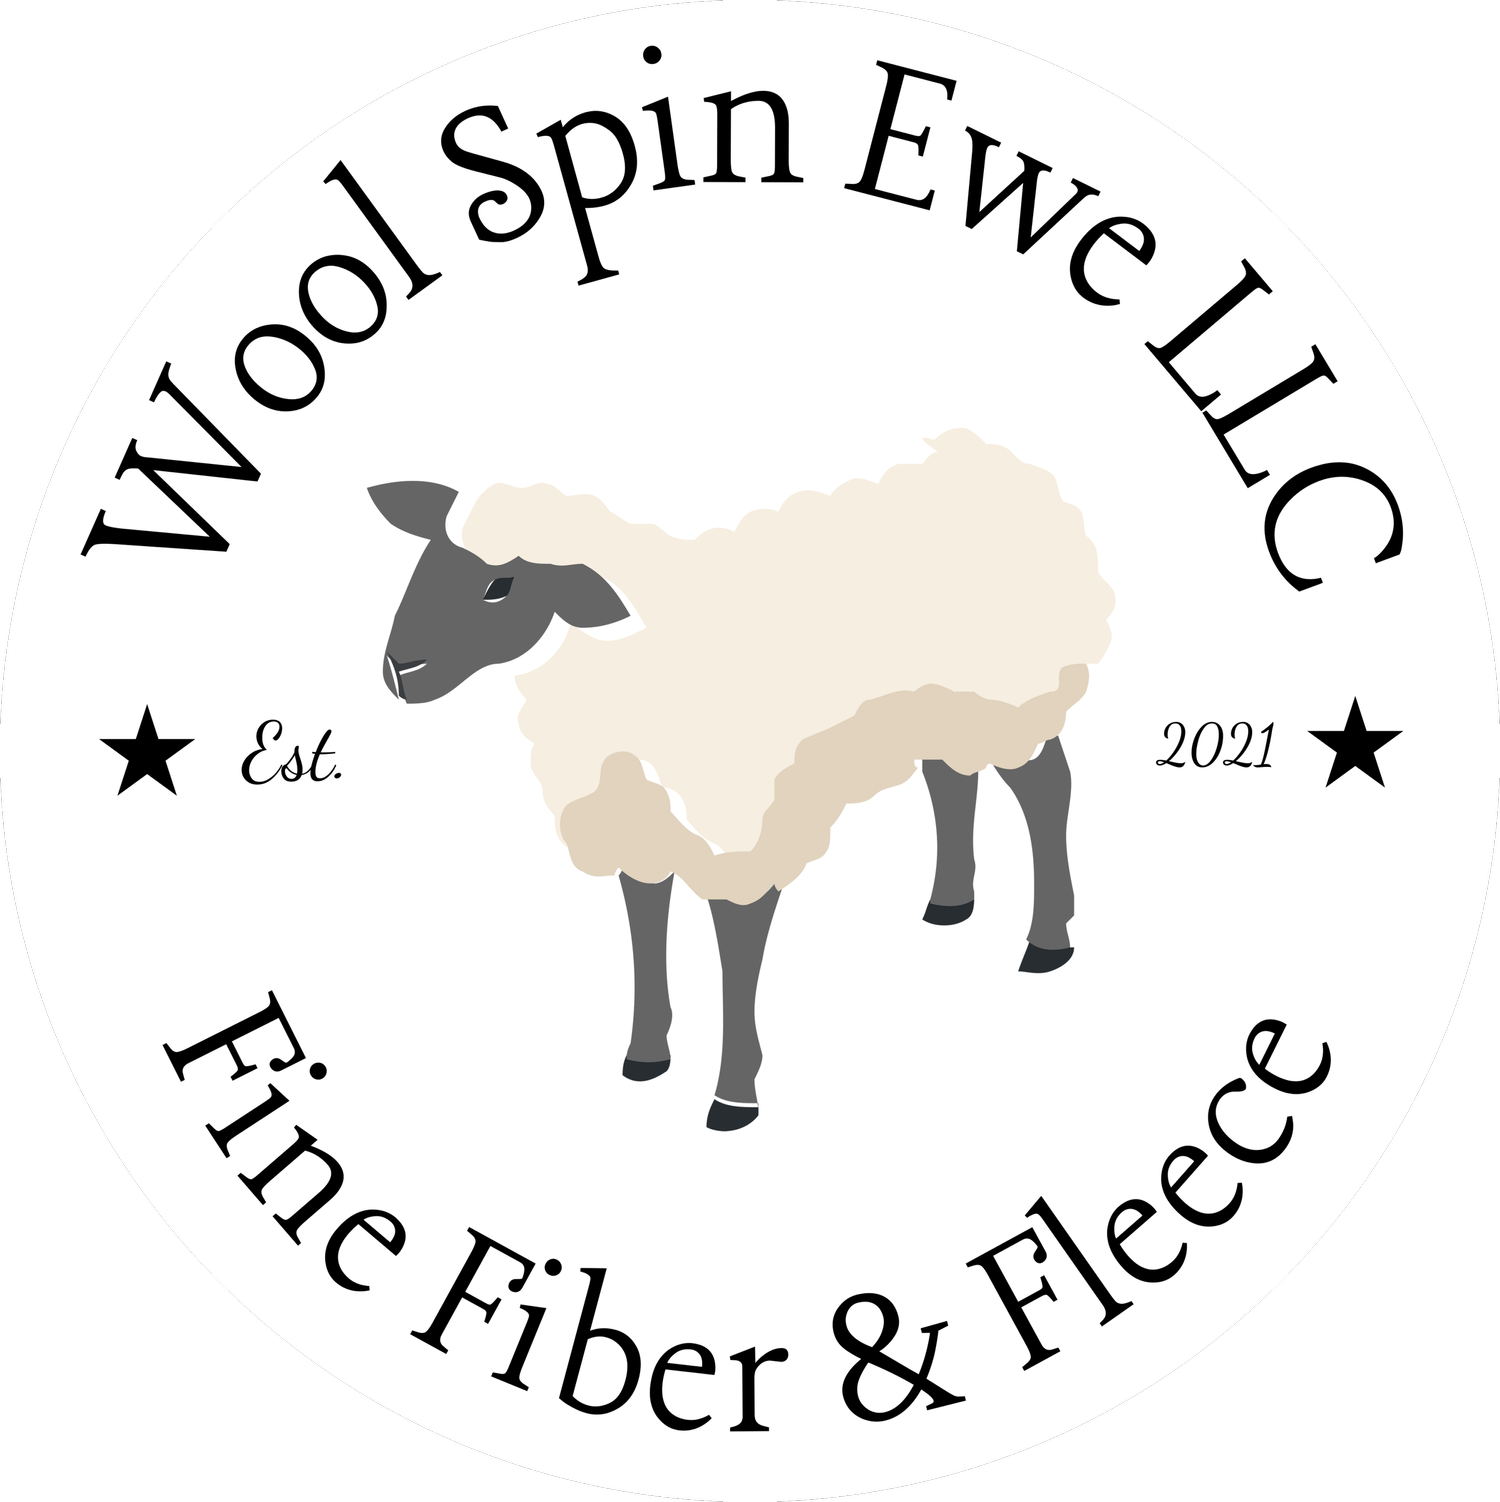 Wool Spin Ewe LLC